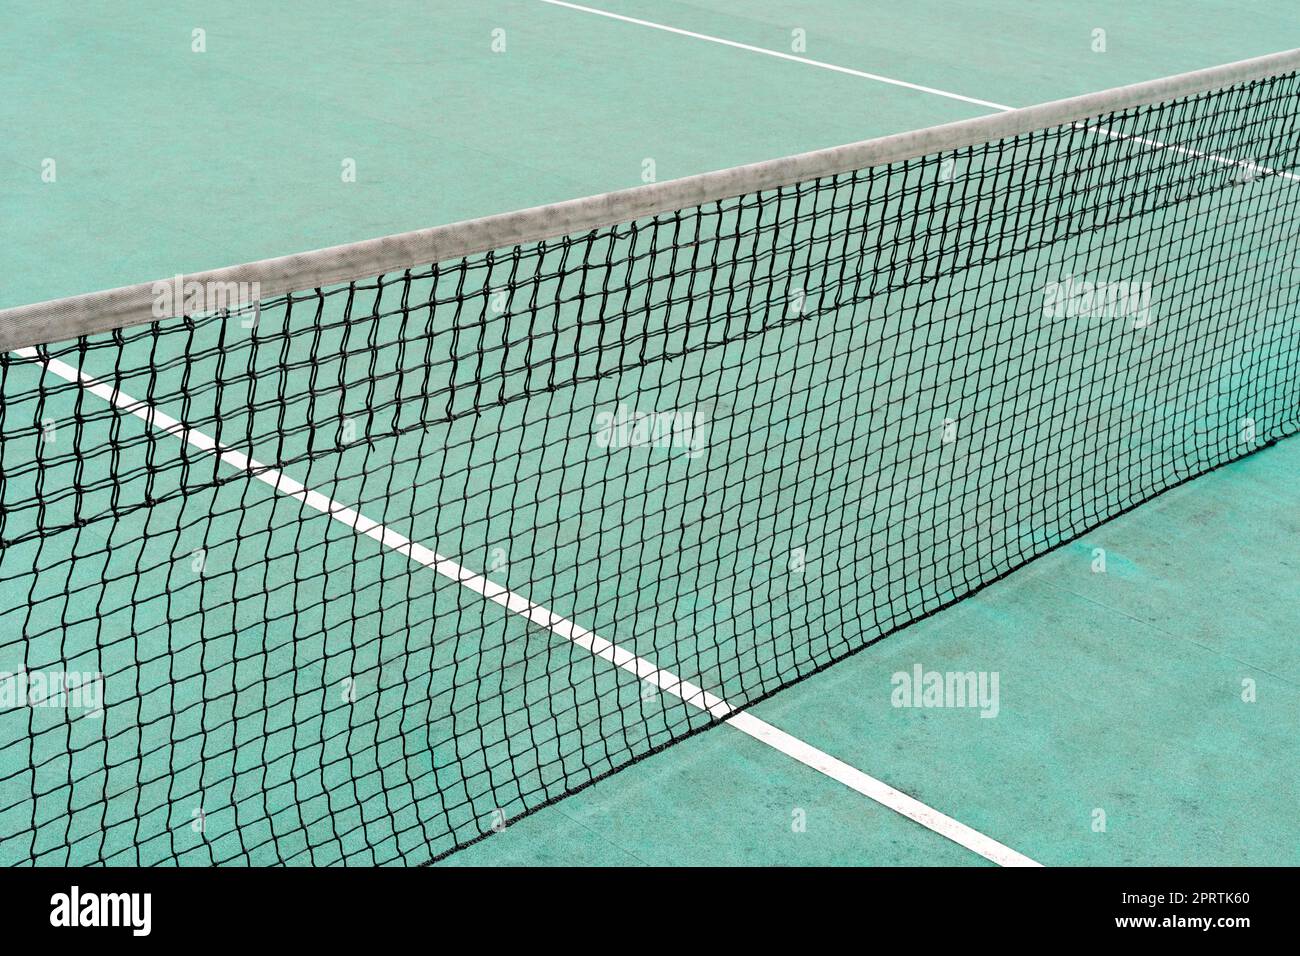 Net of outdoor tennis court Stock Photo